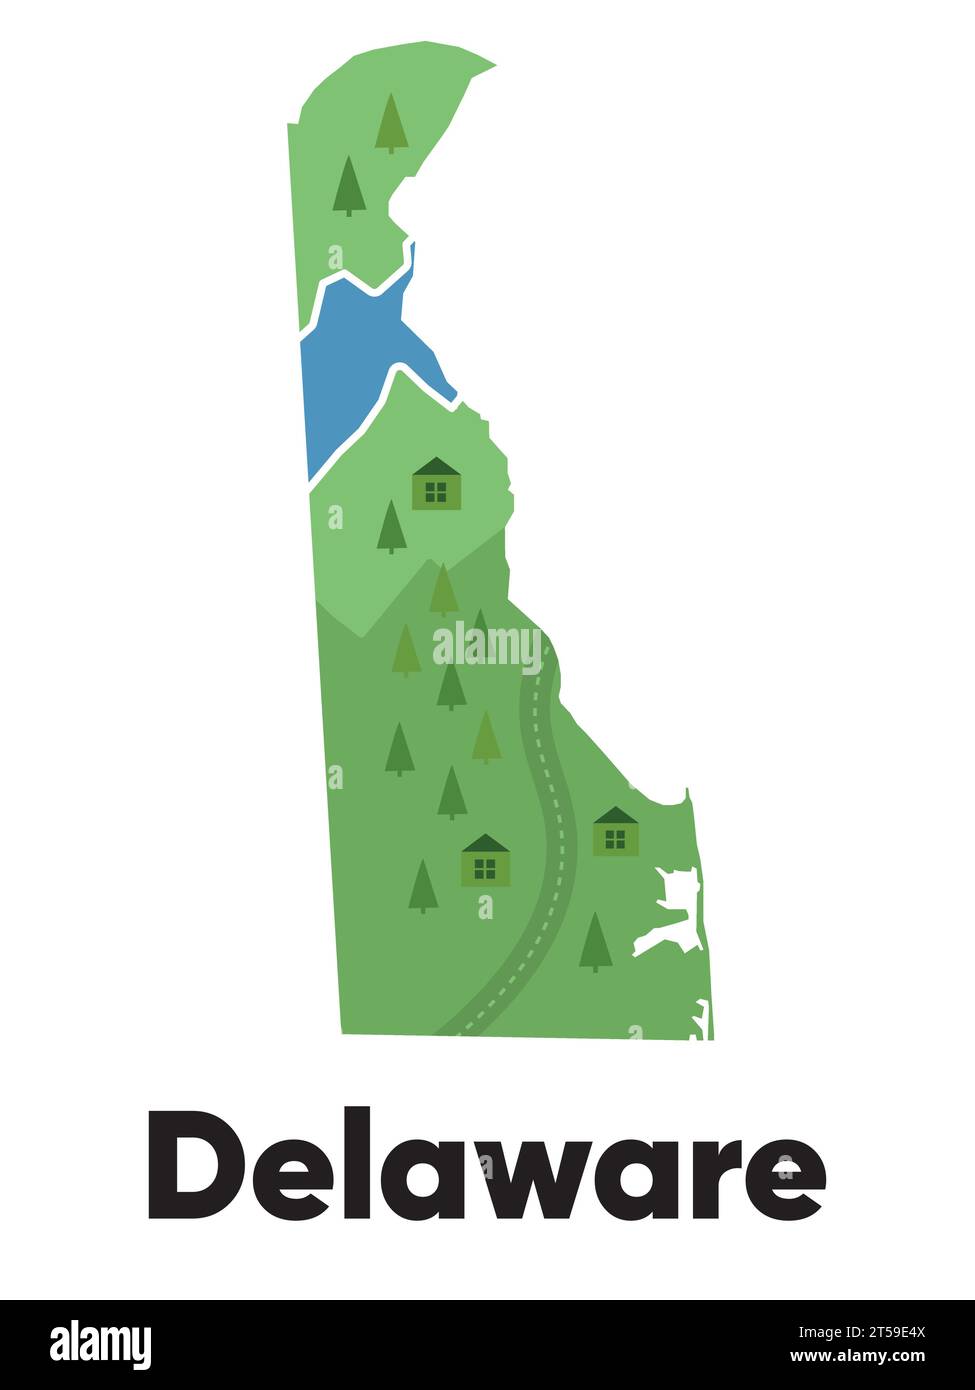 Delaware Kartenform Vereinigte staaten Amerika grüner Wald handgezeichnet Cartoon Stil mit Bäumen reisen Gelände Stock Vektor